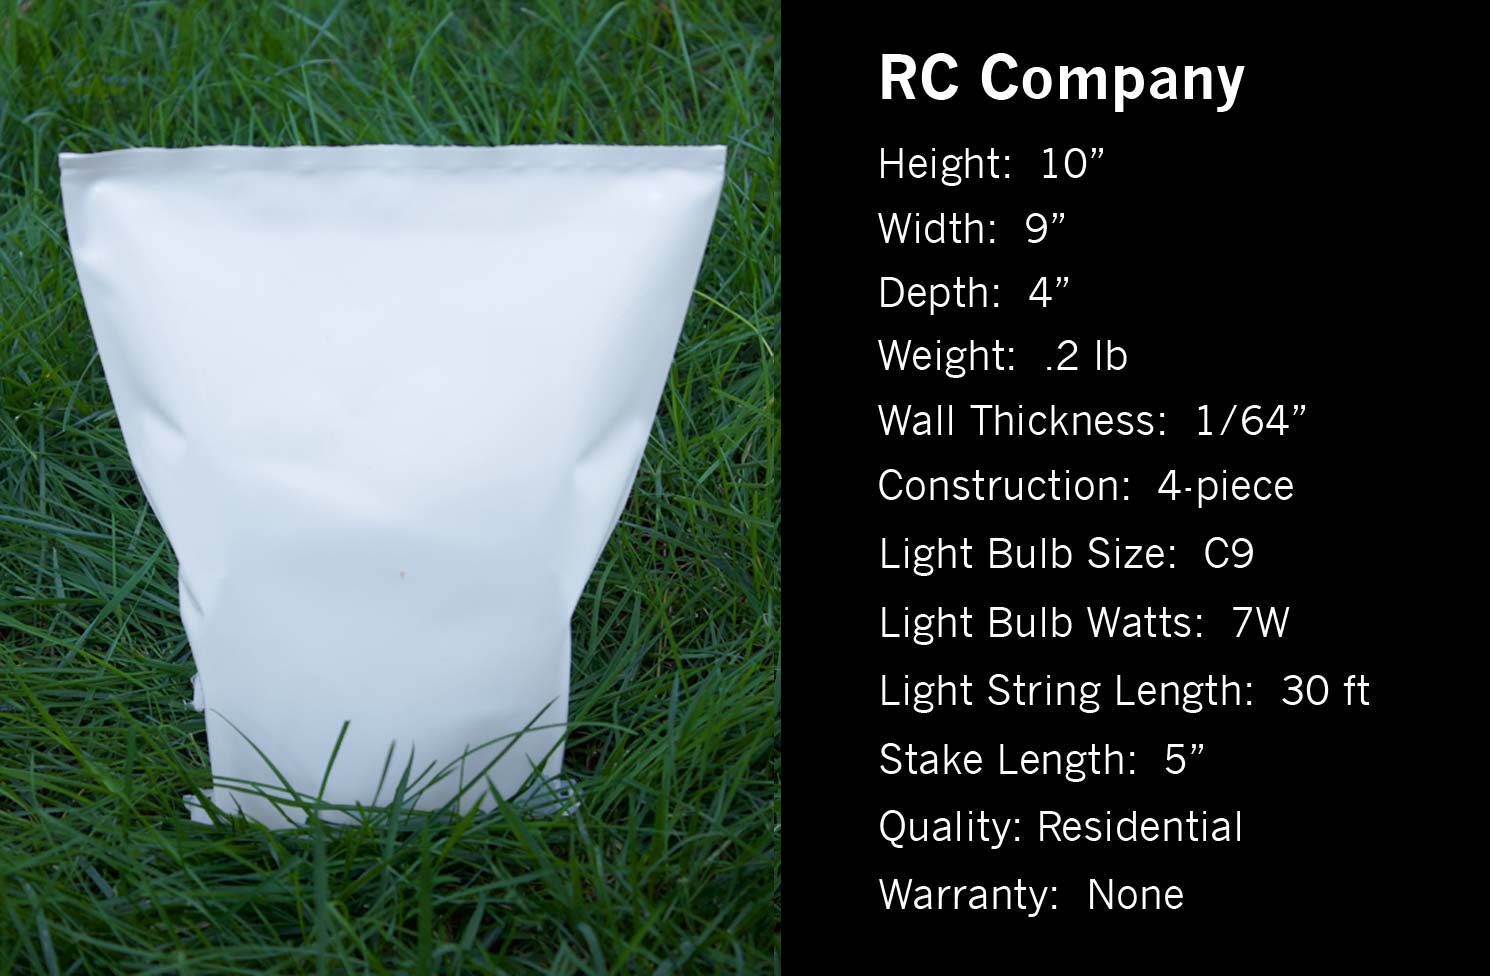 RC Company specs